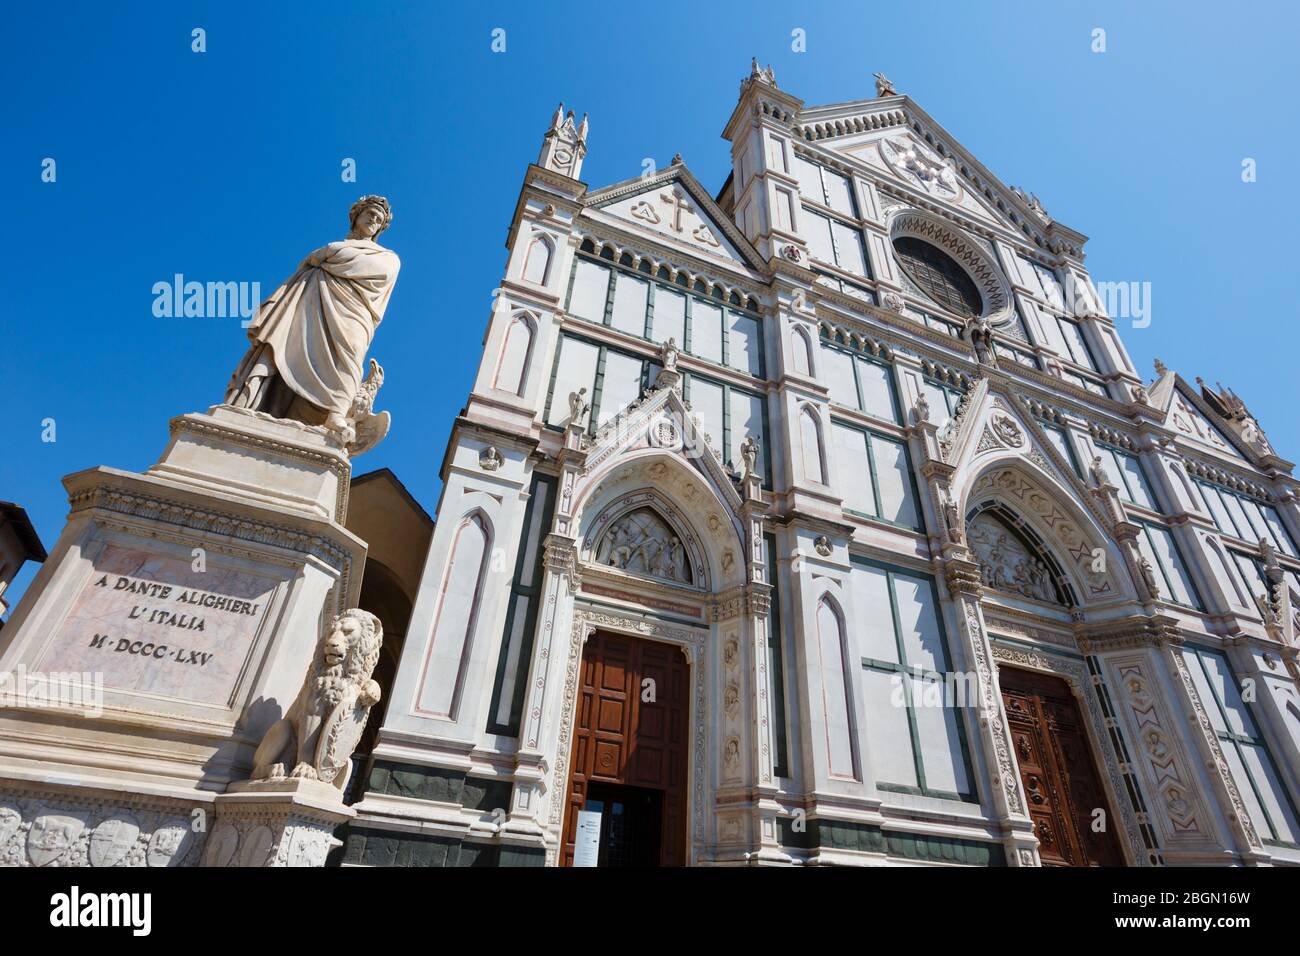 Fassade der Basilika Santa Croce, Basilika des Heiligen Kreuzes, Florenz, Toskana, Italien. Die Statue ist von dem italienischen Dichter Dante Alighieri. Das historische Stockfoto